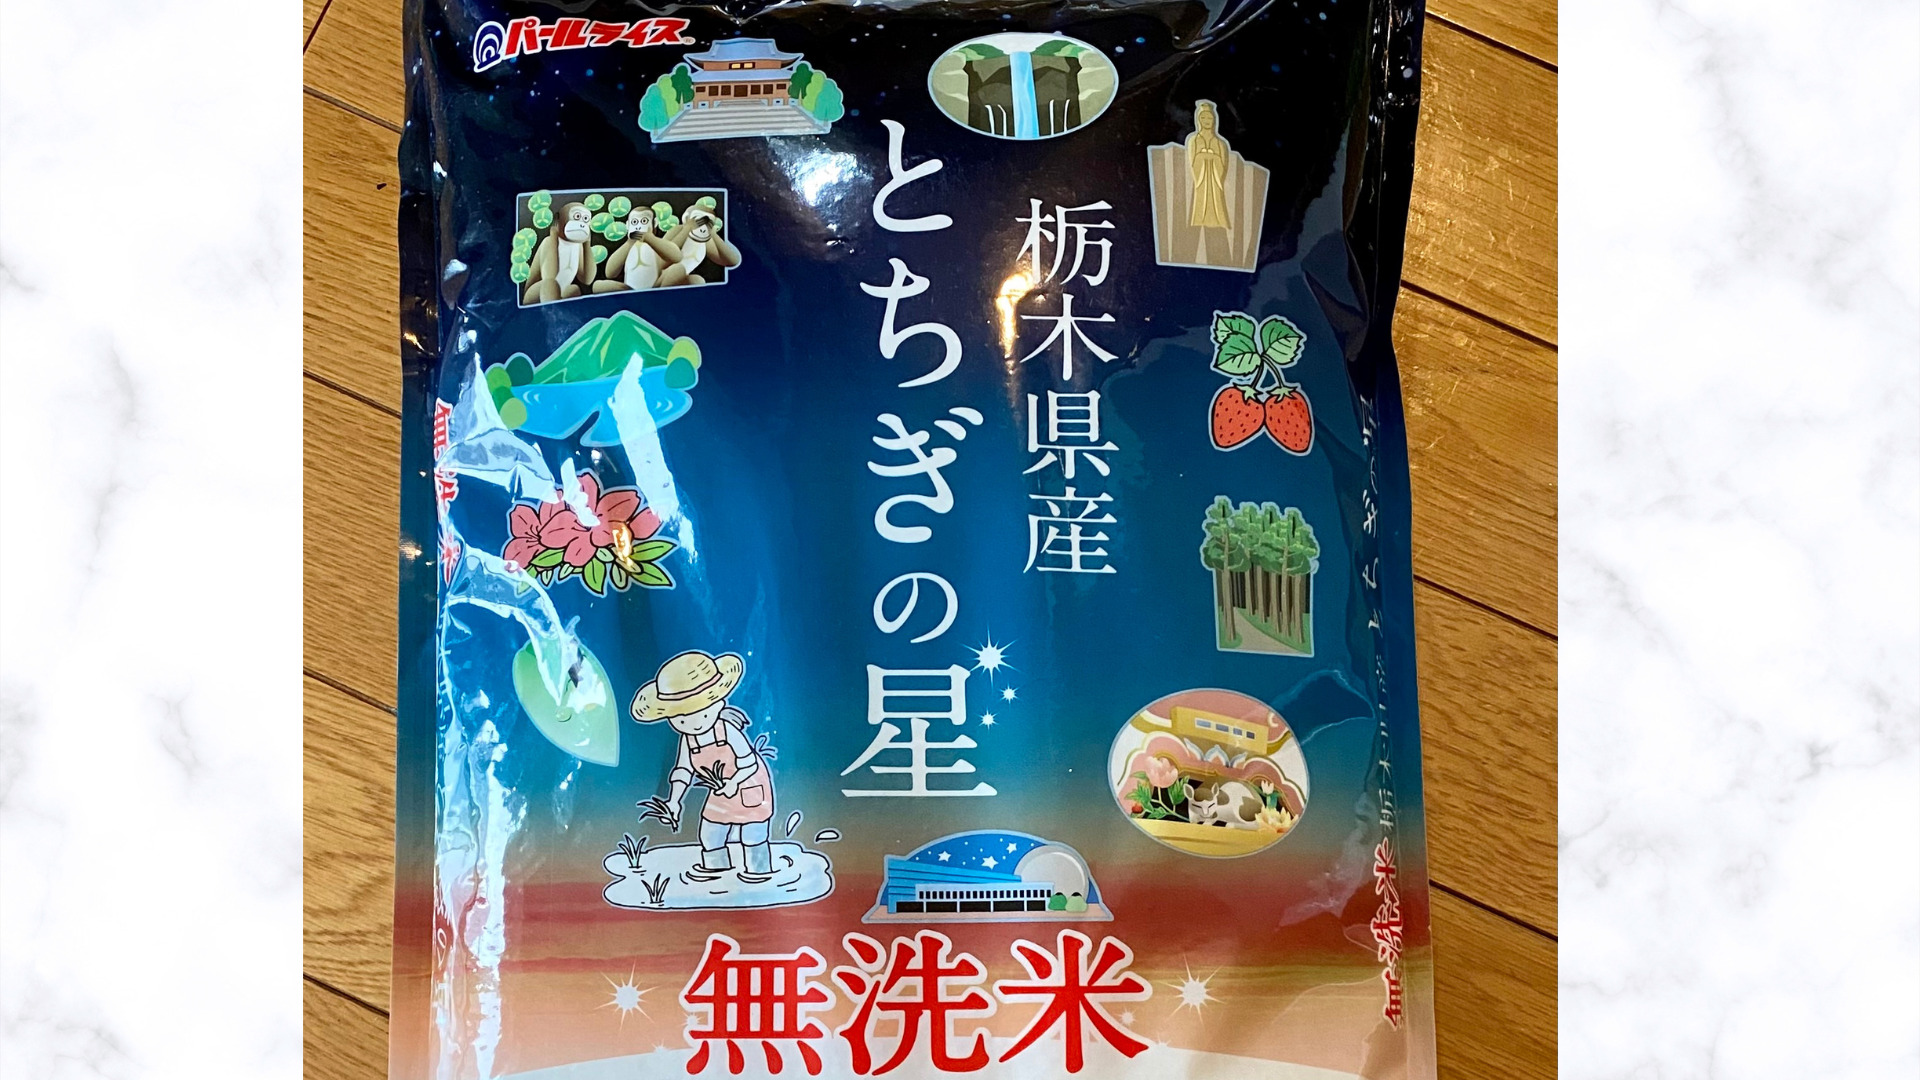 栃木県産【とちぎの星】はまずいお米？特徴やランクを実食レビューで味わう！(16)